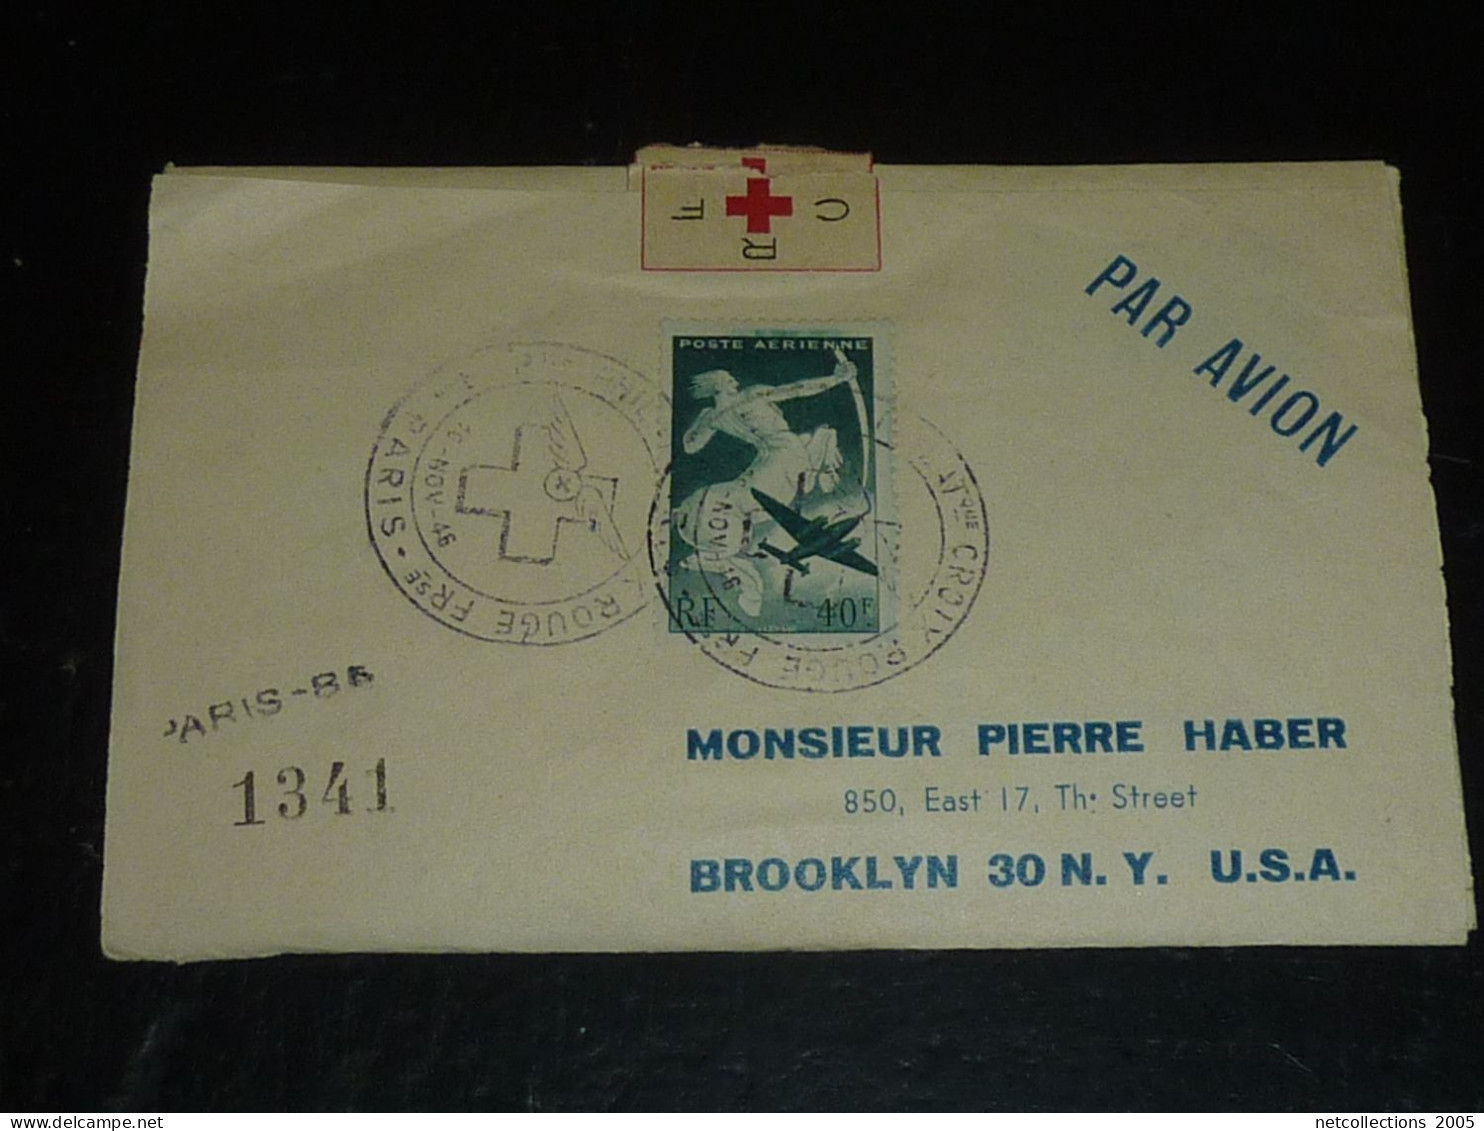 TOUR DU MONDE; CROIX ROUGE - PARIS NEW-YORK 18/11/1946 AU 21/11/1946 - NEW-YORK BRUXELLES - BRUXELLES PARIS ARRIVEE (CB) - Cruz Roja